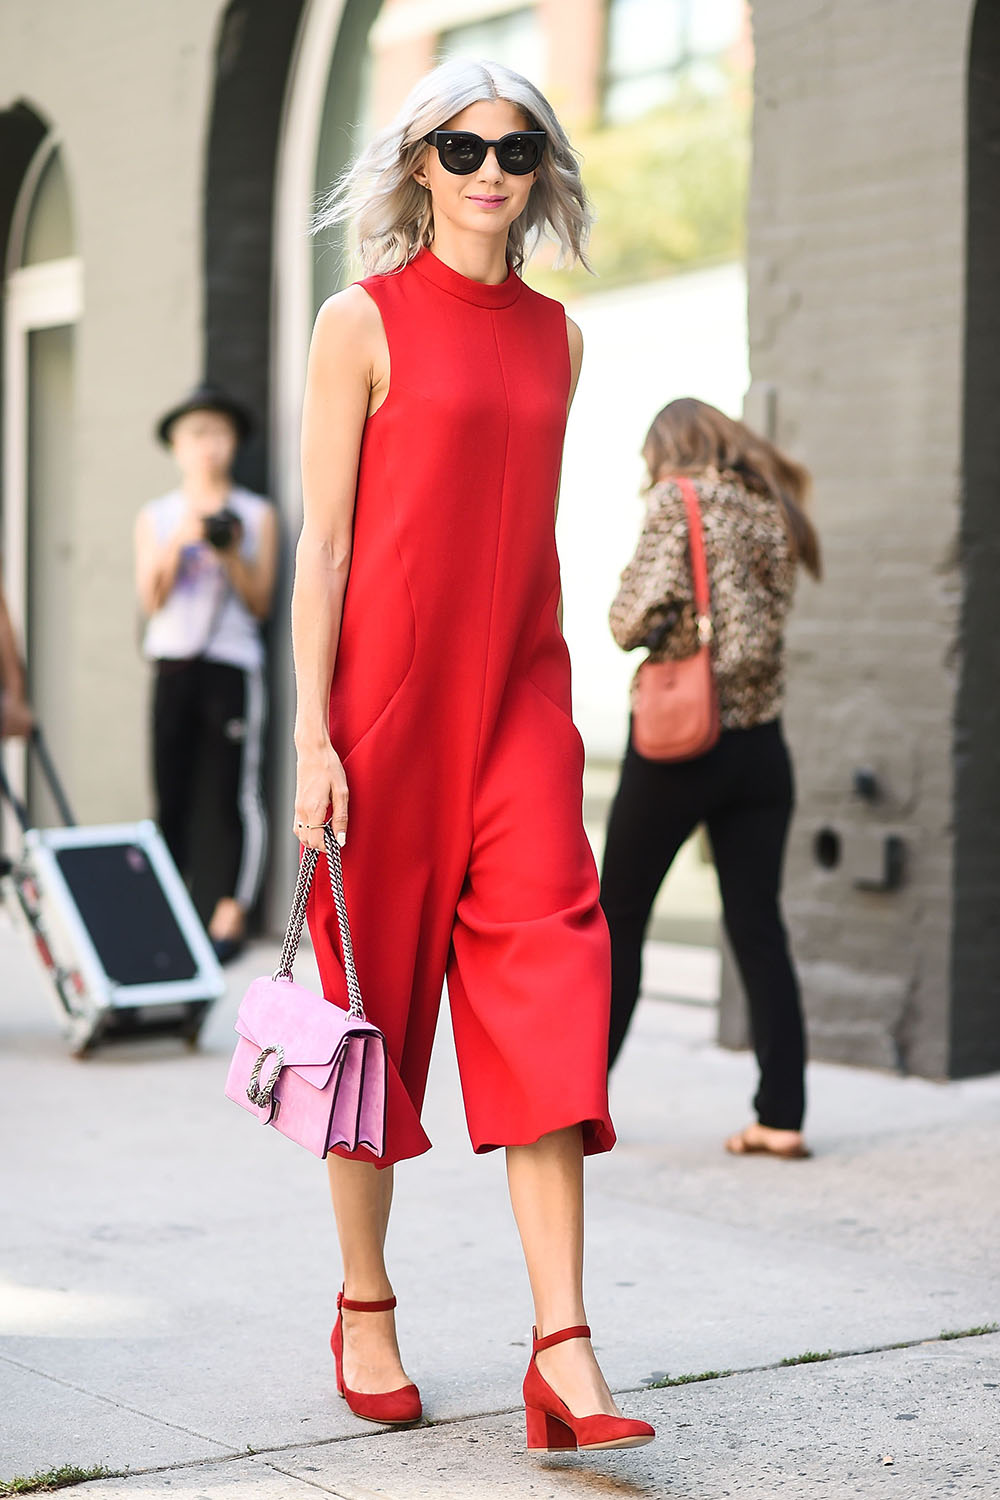 Samantha Angelo at New York Fashion Week 2017